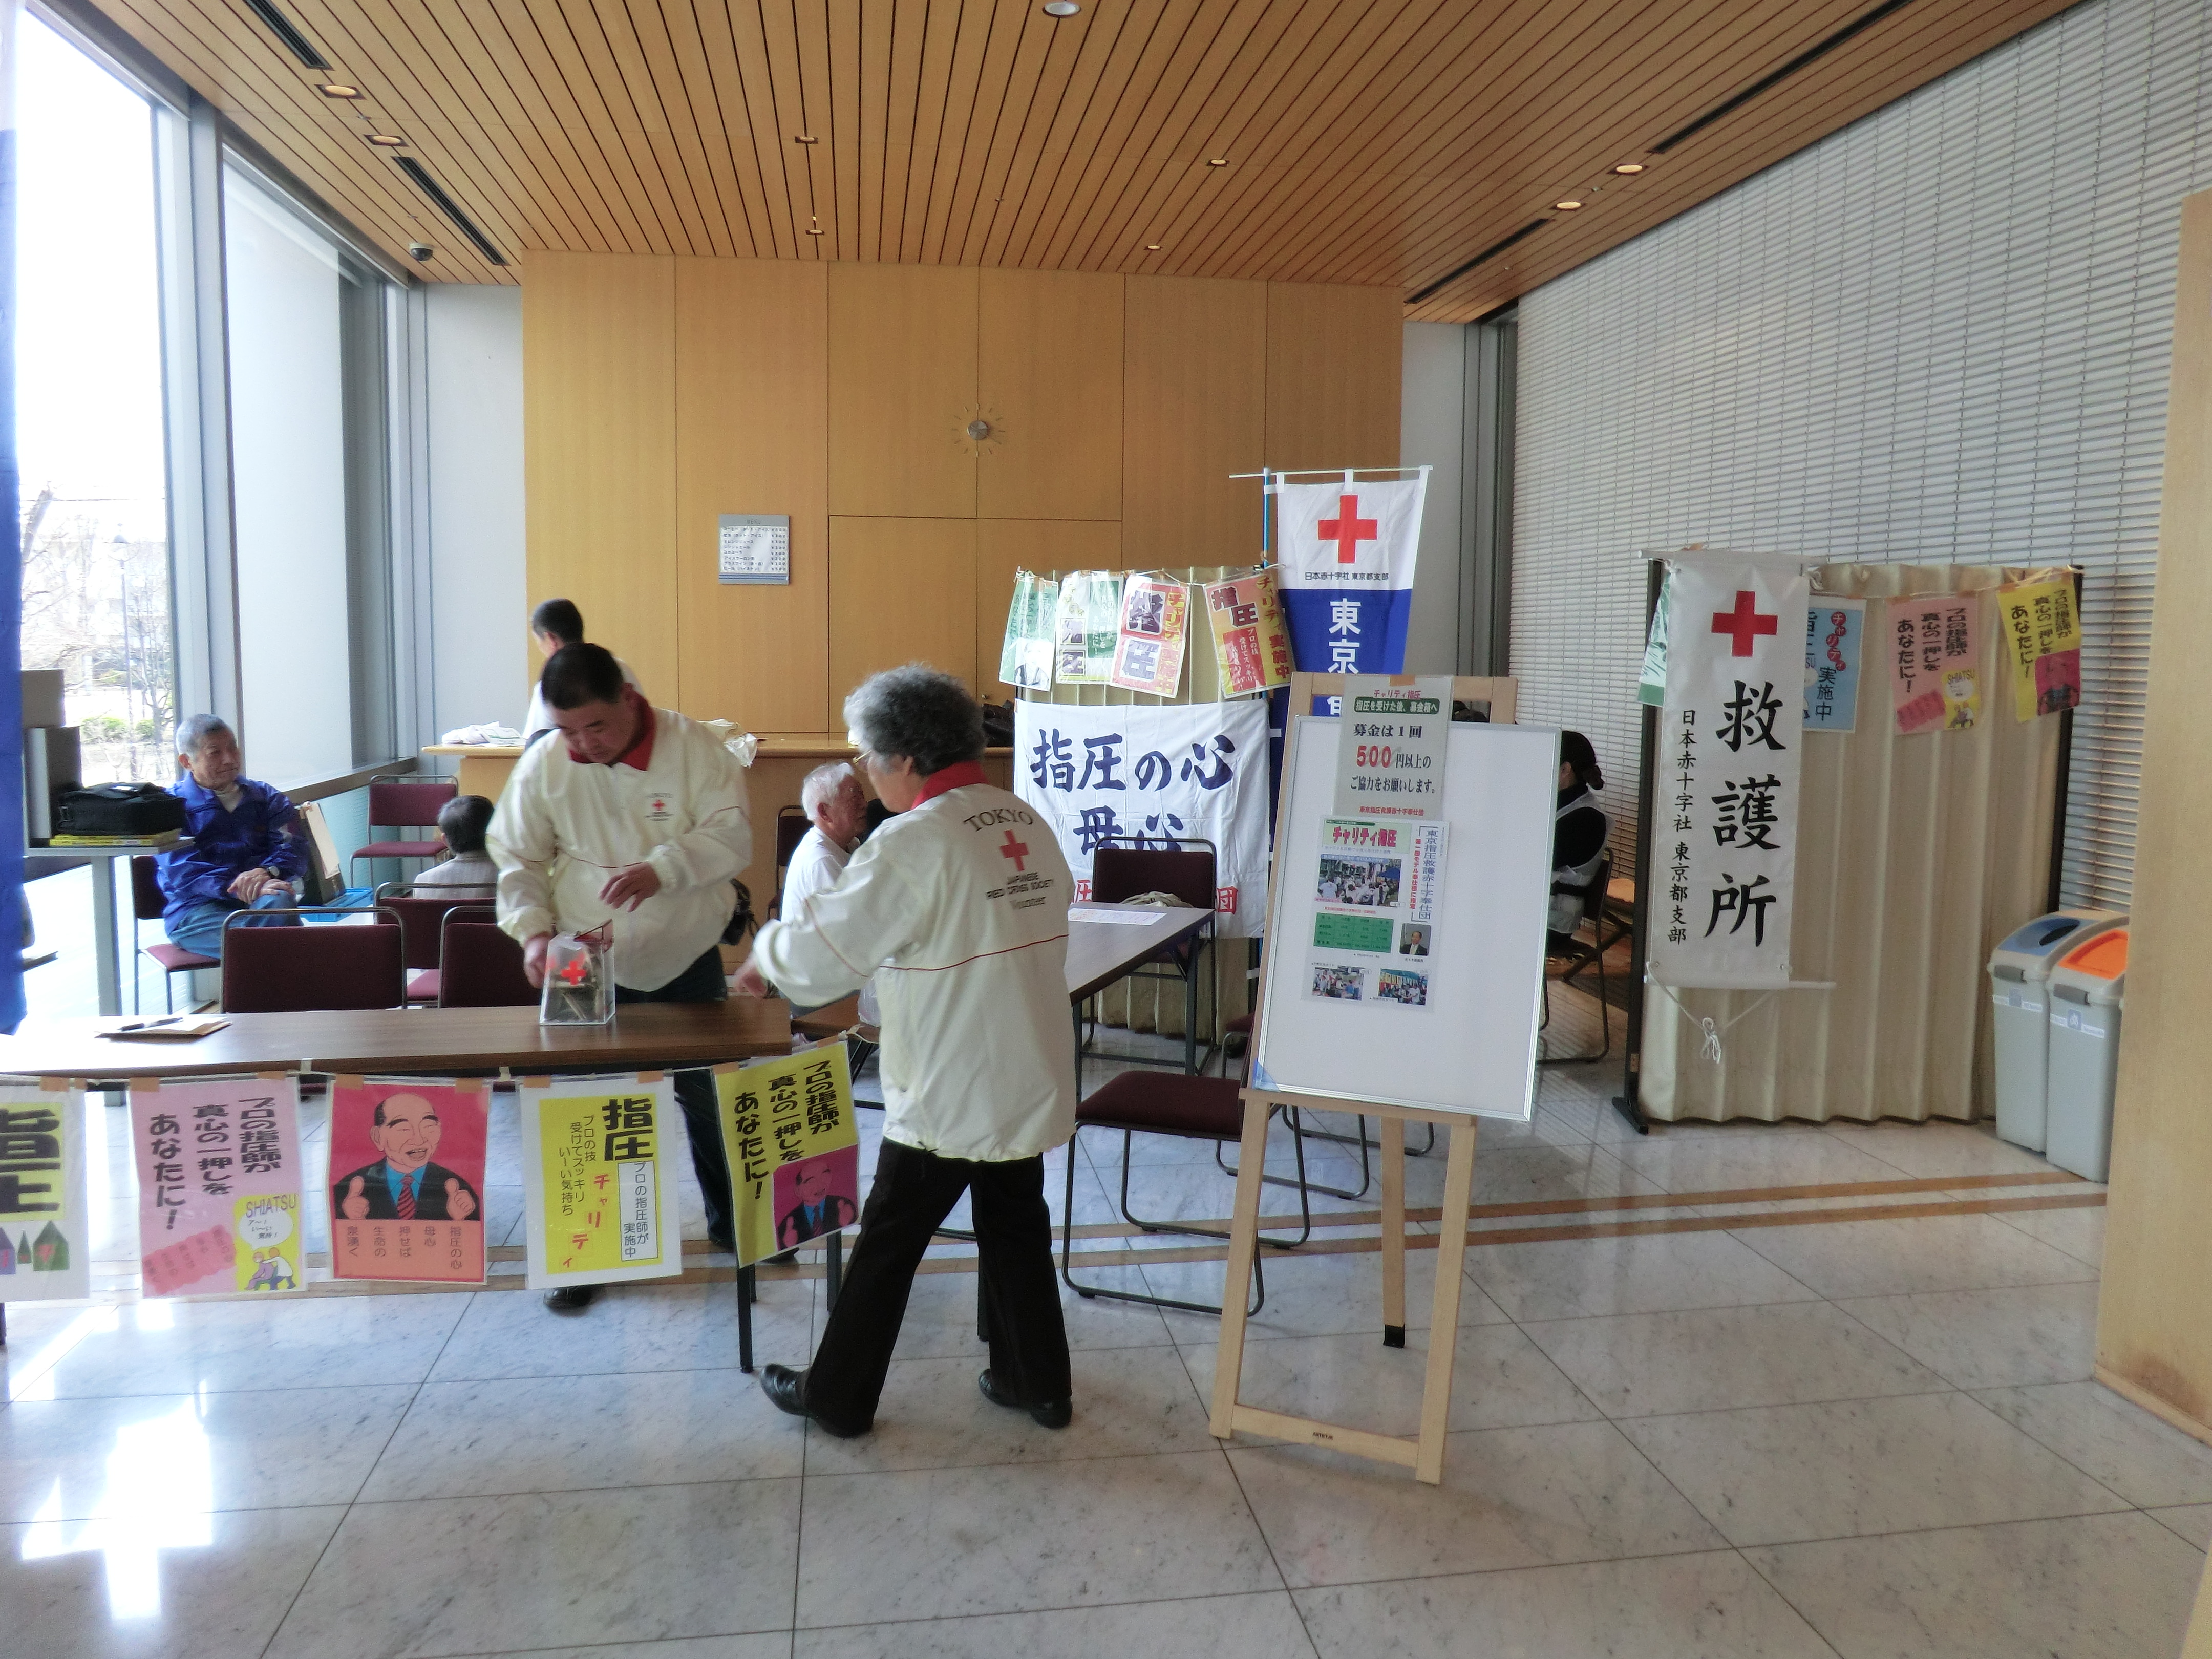 東京指圧救護赤十字奉仕団さんに指圧やっていただきたかったなぁ。